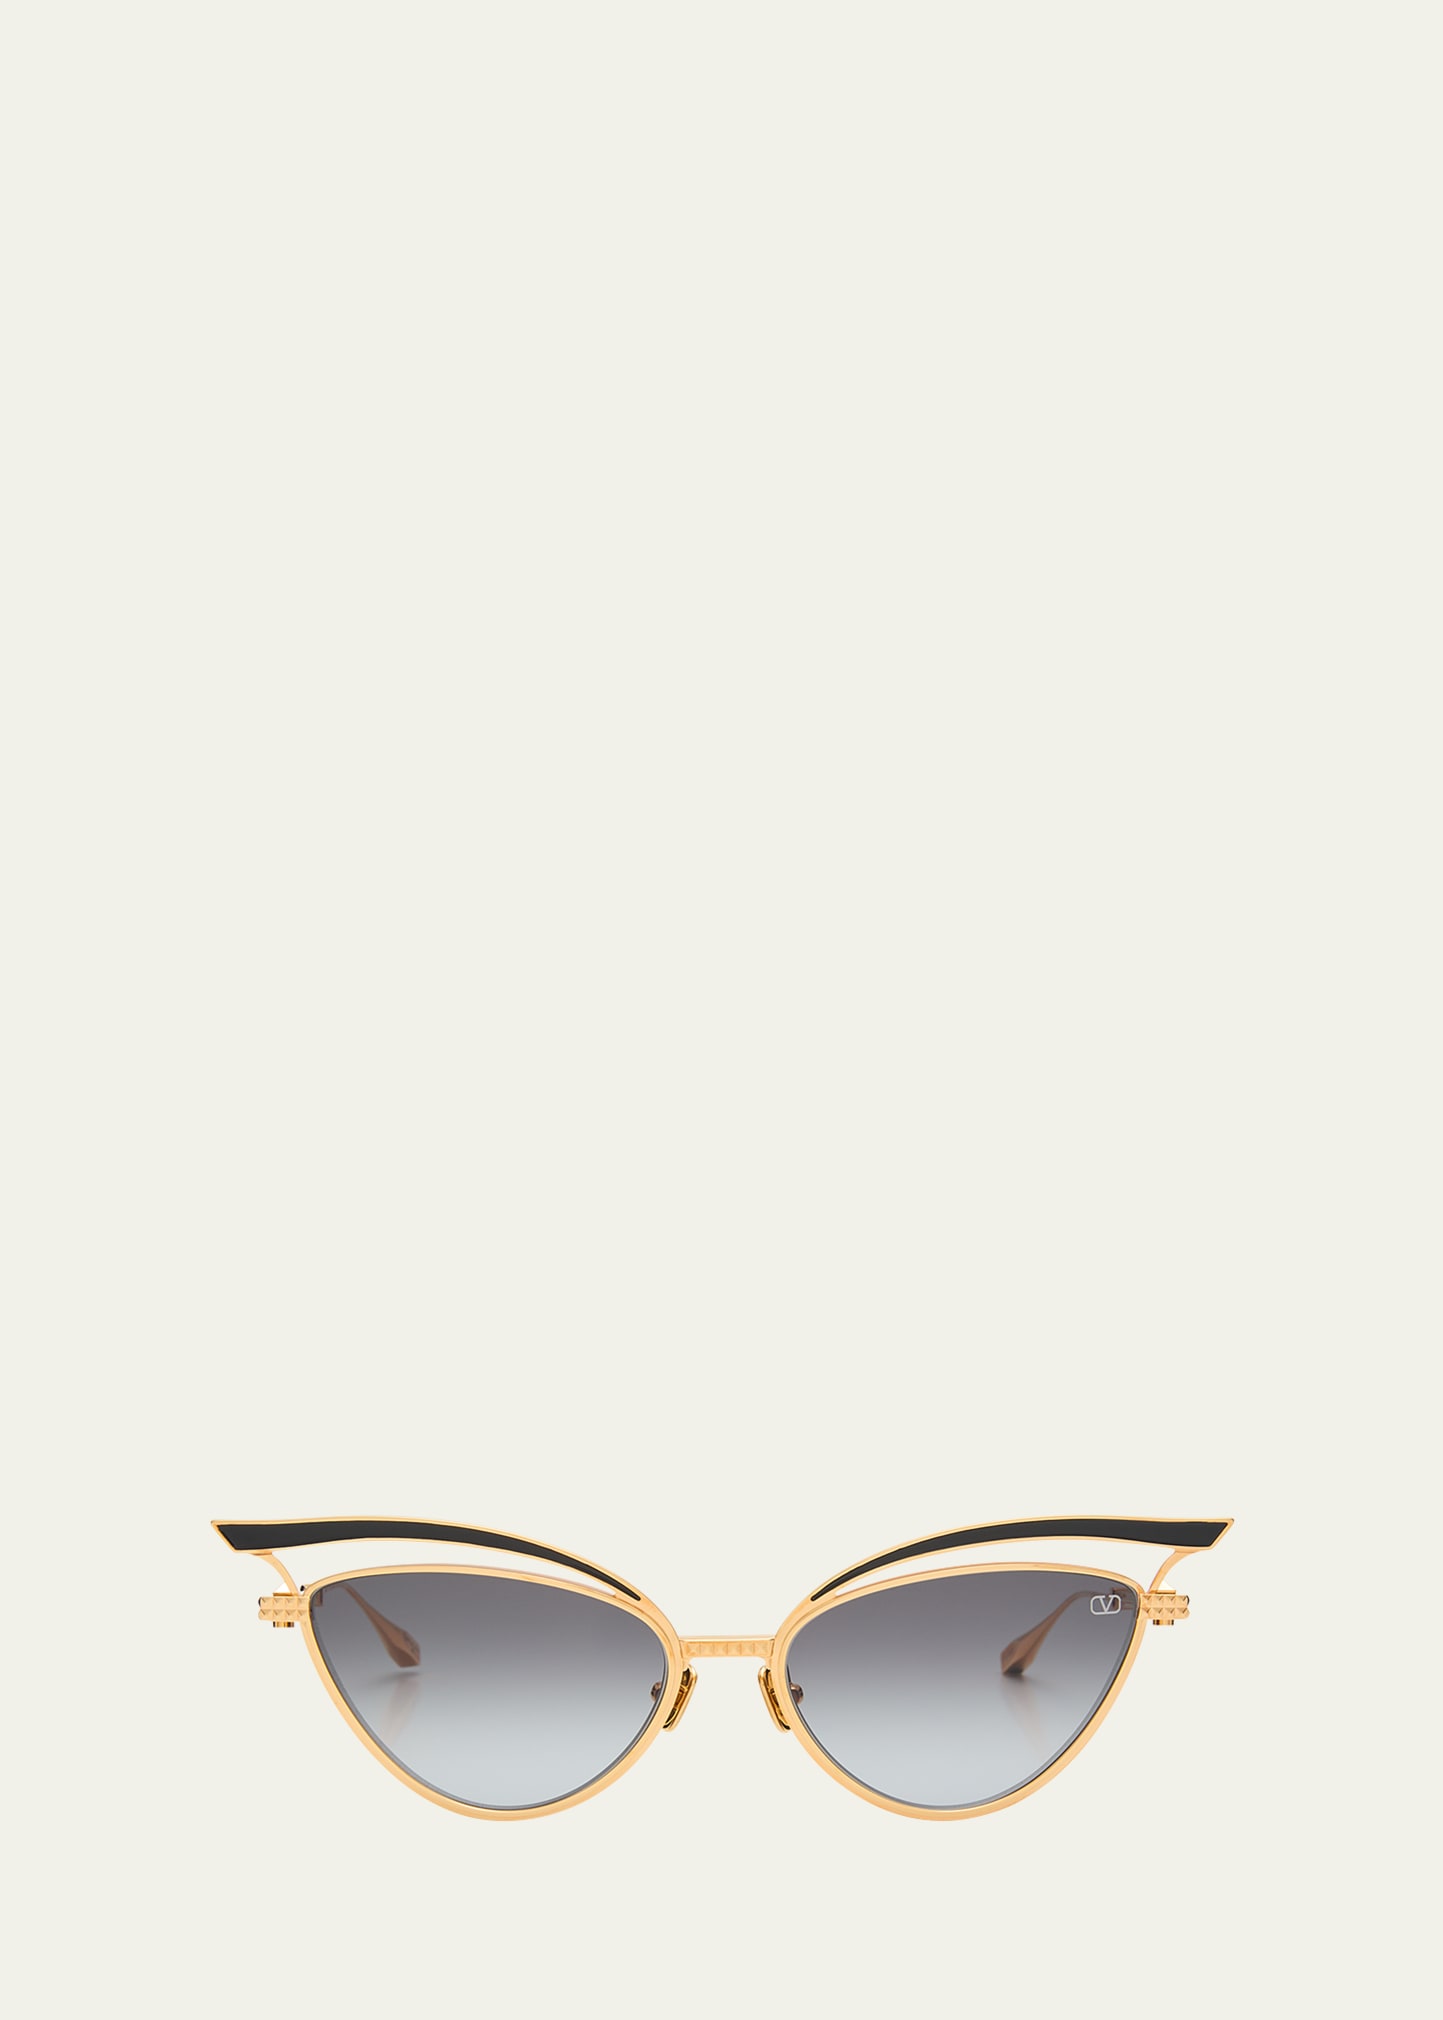 Valentino V-glassliner Titanium Cat-eye Sunglasses In Gld-blk